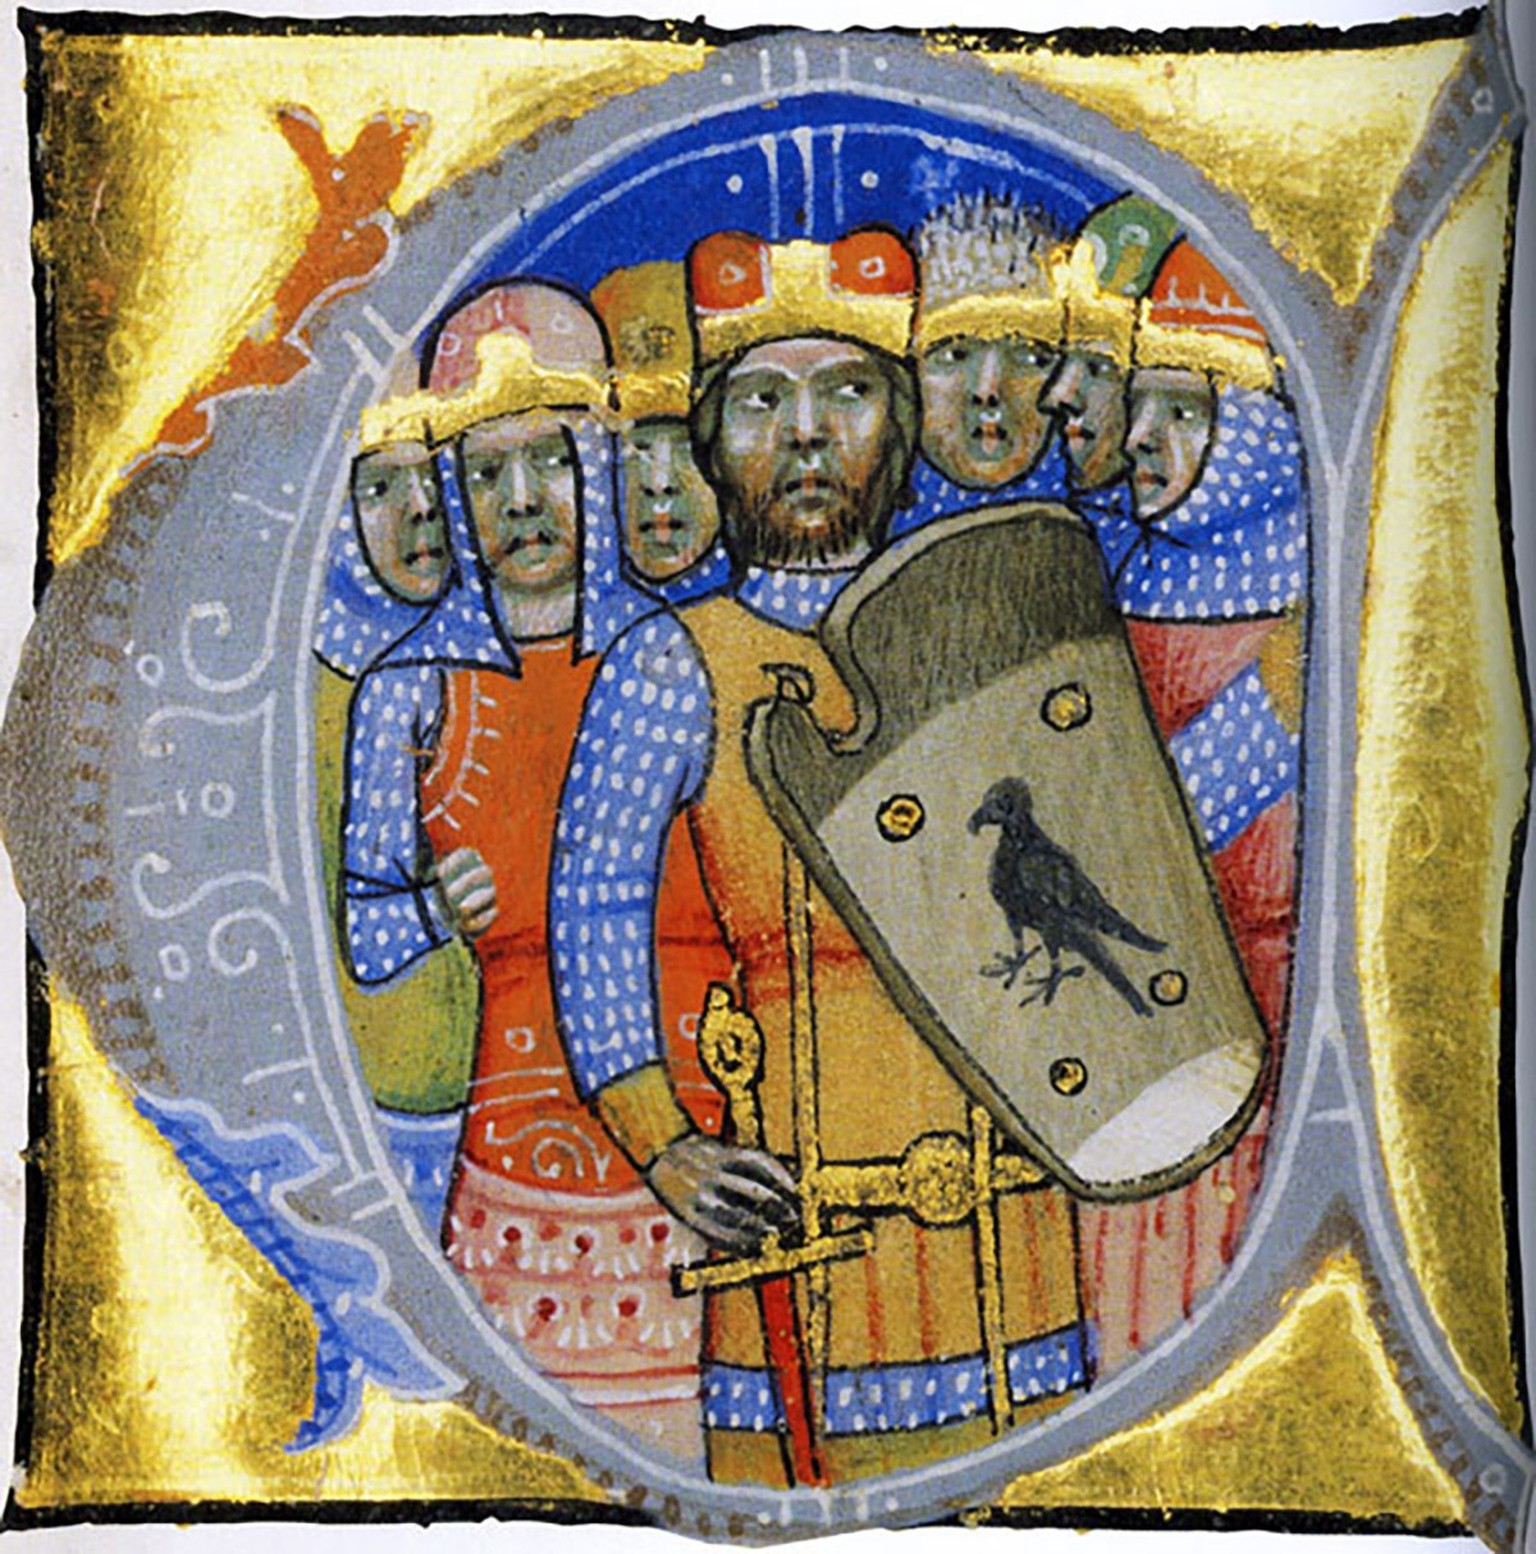 Die sieben Heerführer der Magyaren in einer Miniatur der Ungarischen Bilderchronik von 1360.
https://upload.wikimedia.org/wikipedia/commons/5/5b/HetVezer-ChroniconPictum.jpg